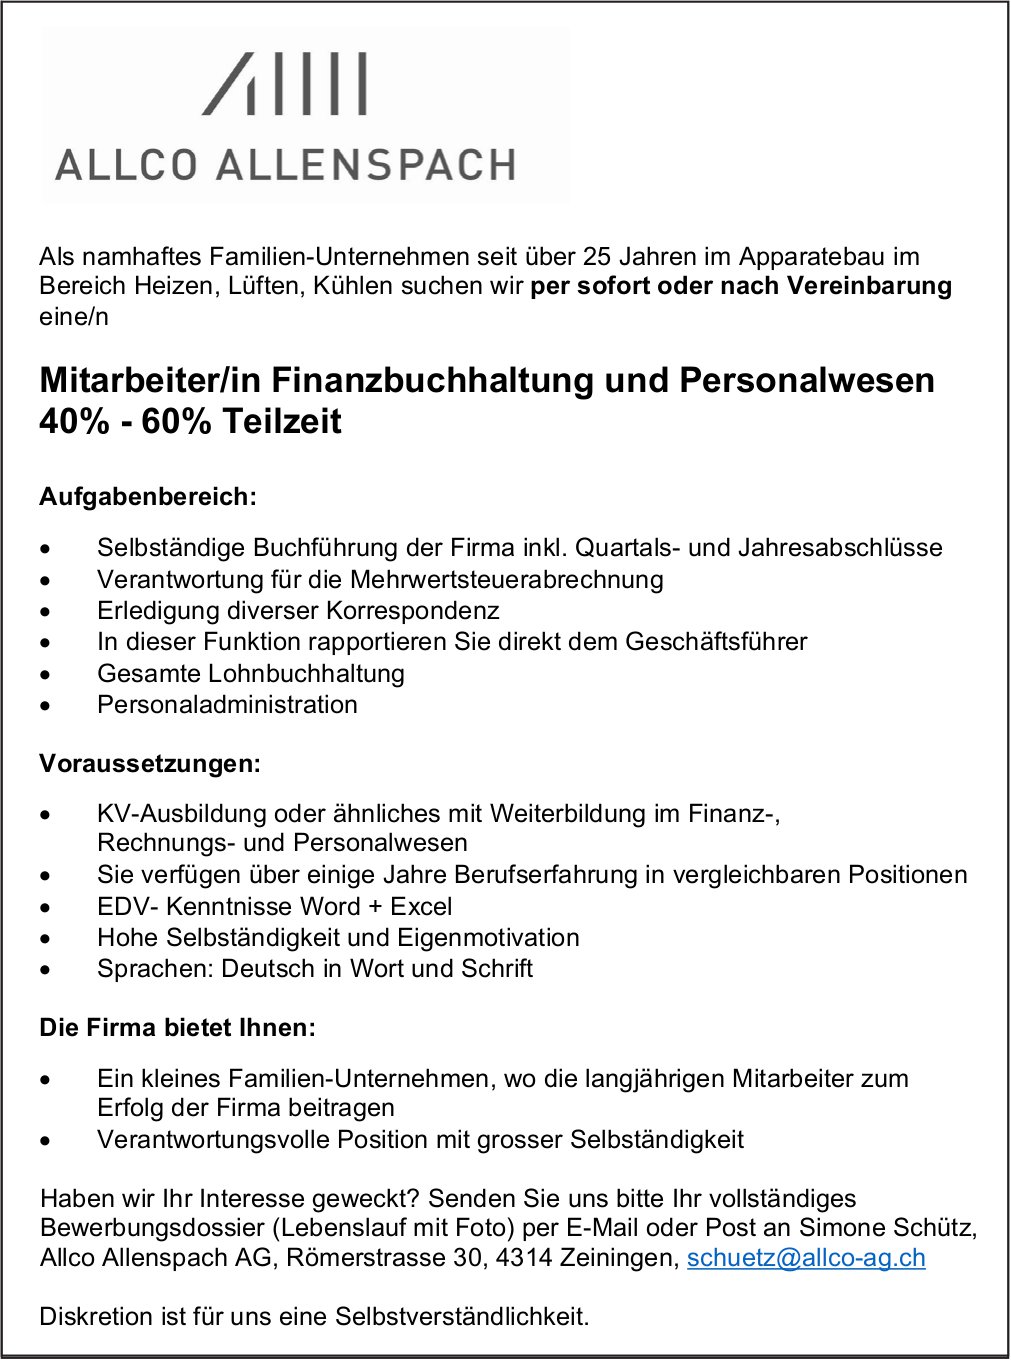 Mitarbeiter/in Finanzbuchhaltung und Personalwesen 40-60% Teilzeit, Allco Allenspach AG, Zeiningen, Gesucht